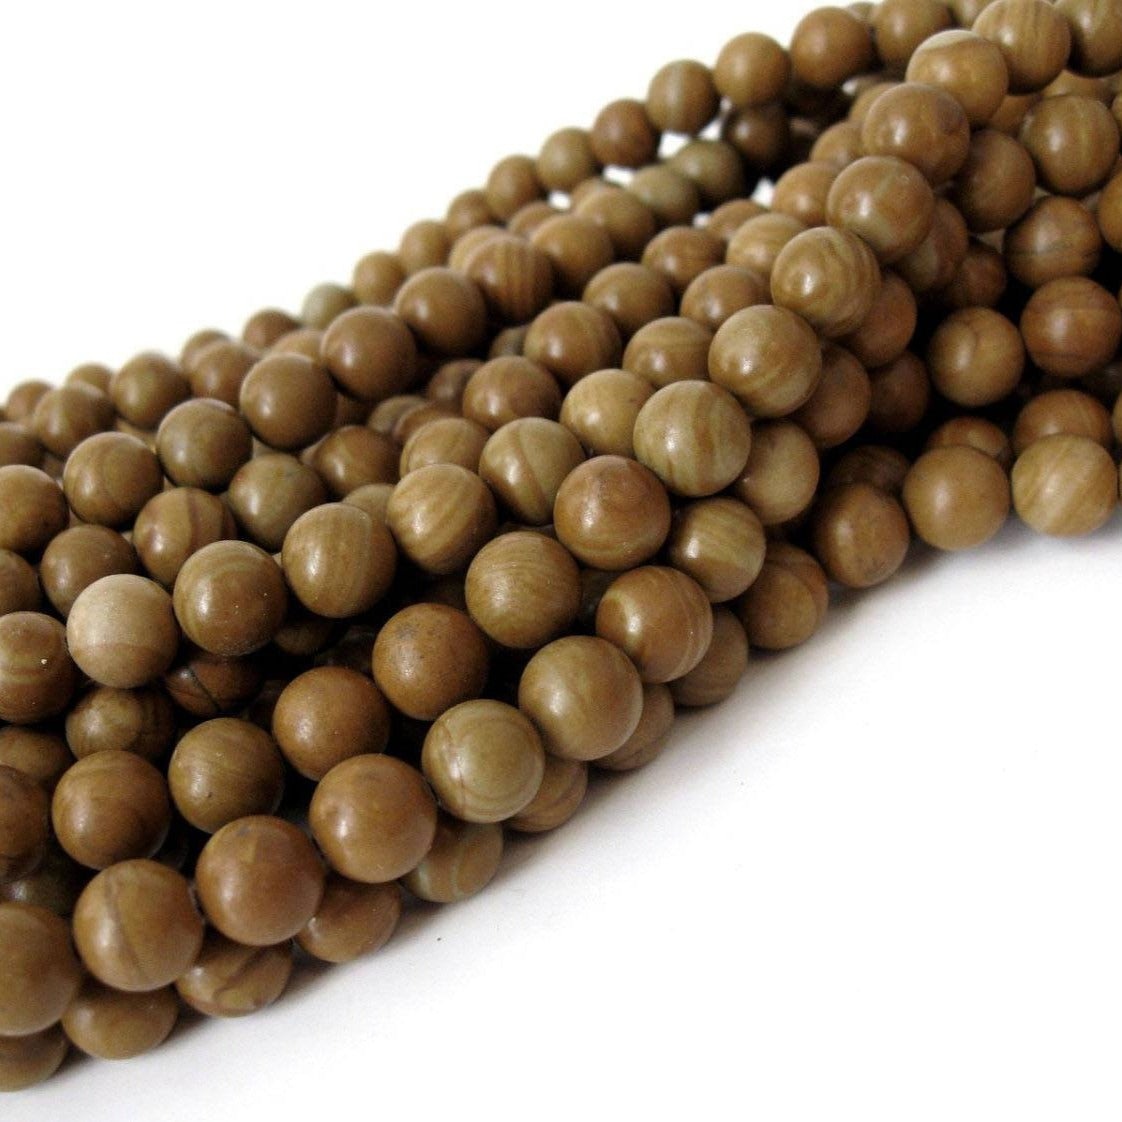 Round Brown Natural Wood Beads at Rs 650/kilogram in Bhiwani